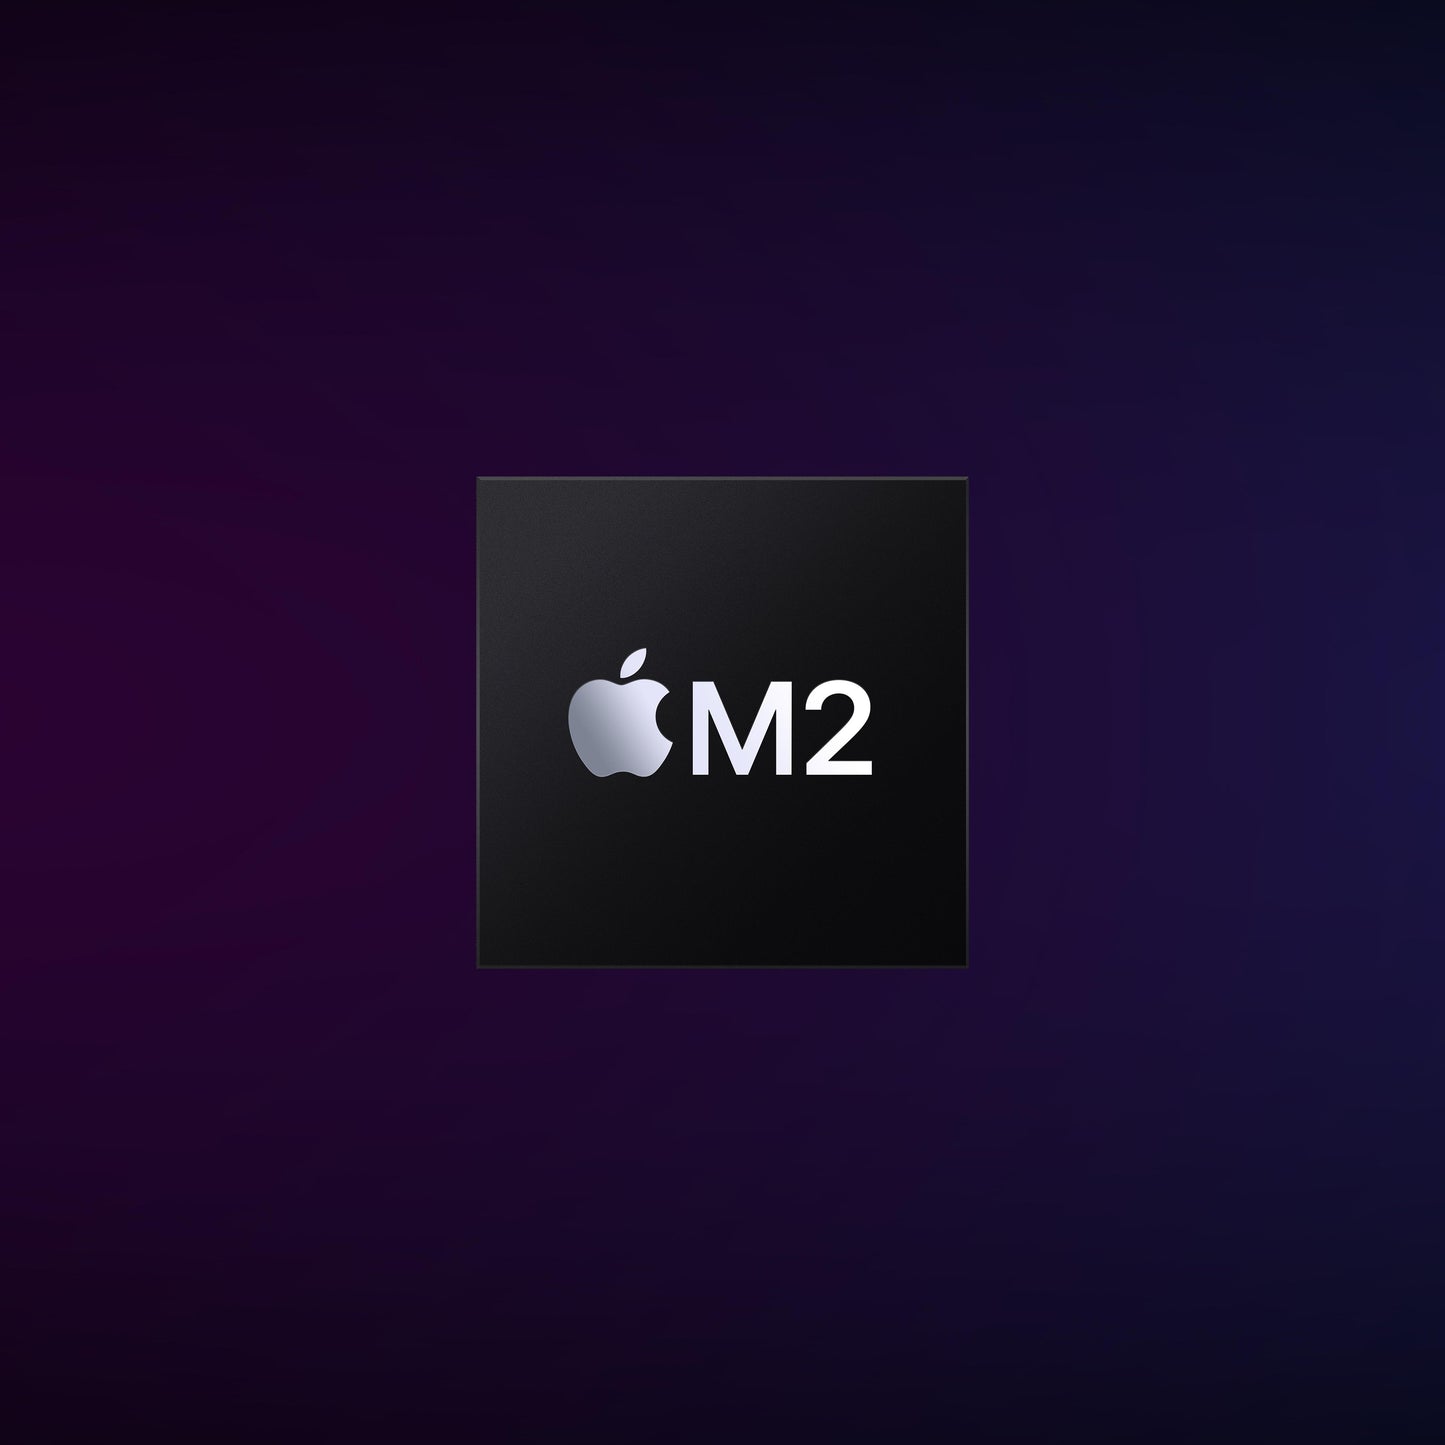 Mac mini: Apple M2 chip with 8Corecore CPU and 10Corecore GPU, 256GB SSD - Silver